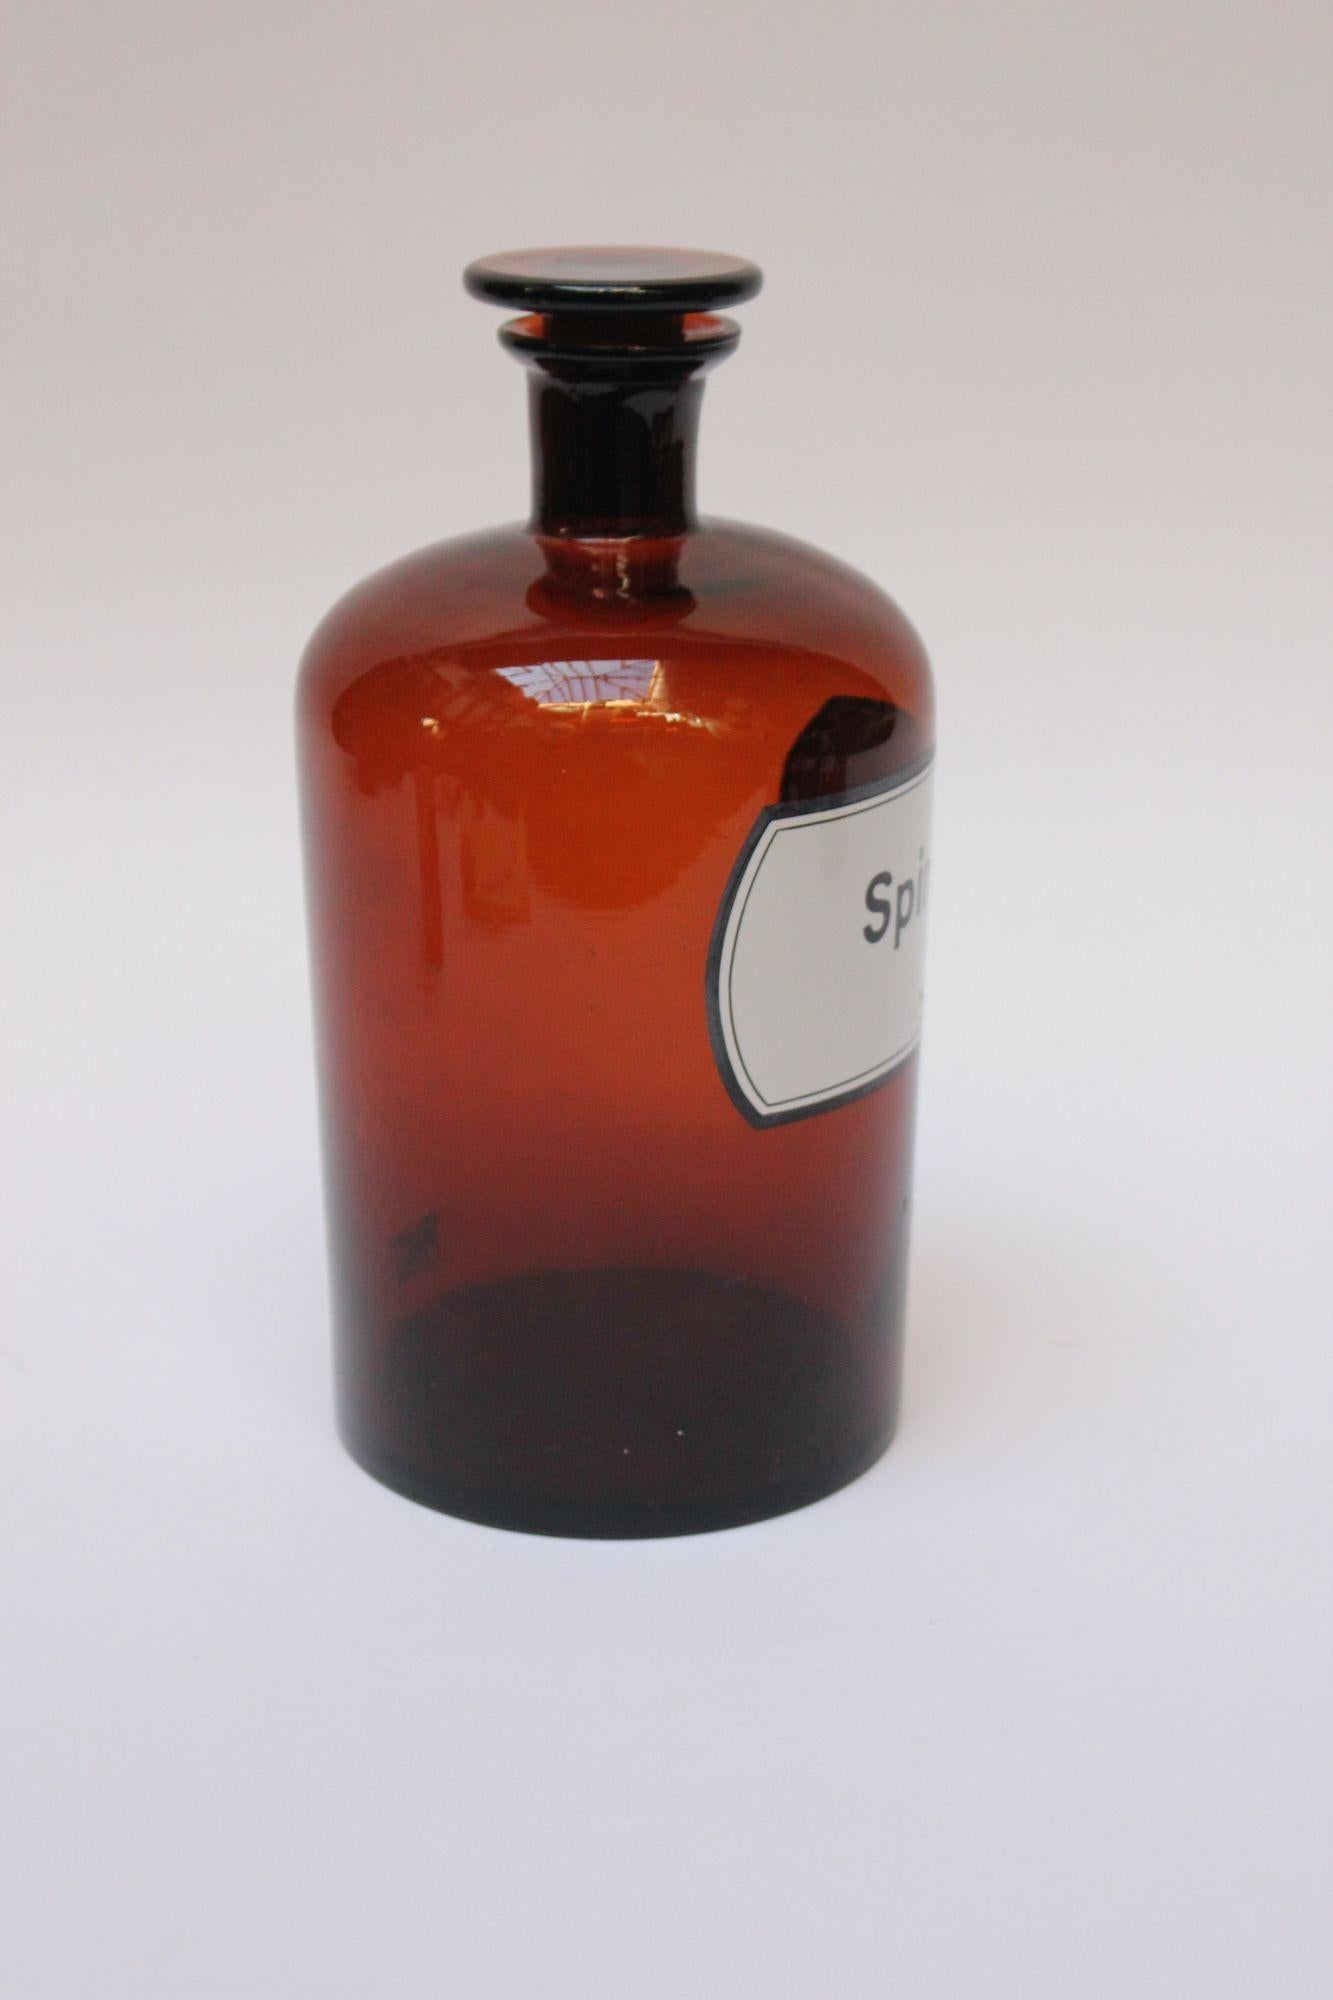 Große 'Spiritus'-Apothekenflasche (ca. Ende der 1920er/Anfang der 1930er Jahre, Deutschland).
Braunglas mit Knopfverschluss und emailliertem Label.
Guter, alter Zustand mit leichten Abnutzungserscheinungen auf dem Label und leichten Verschmutzungen